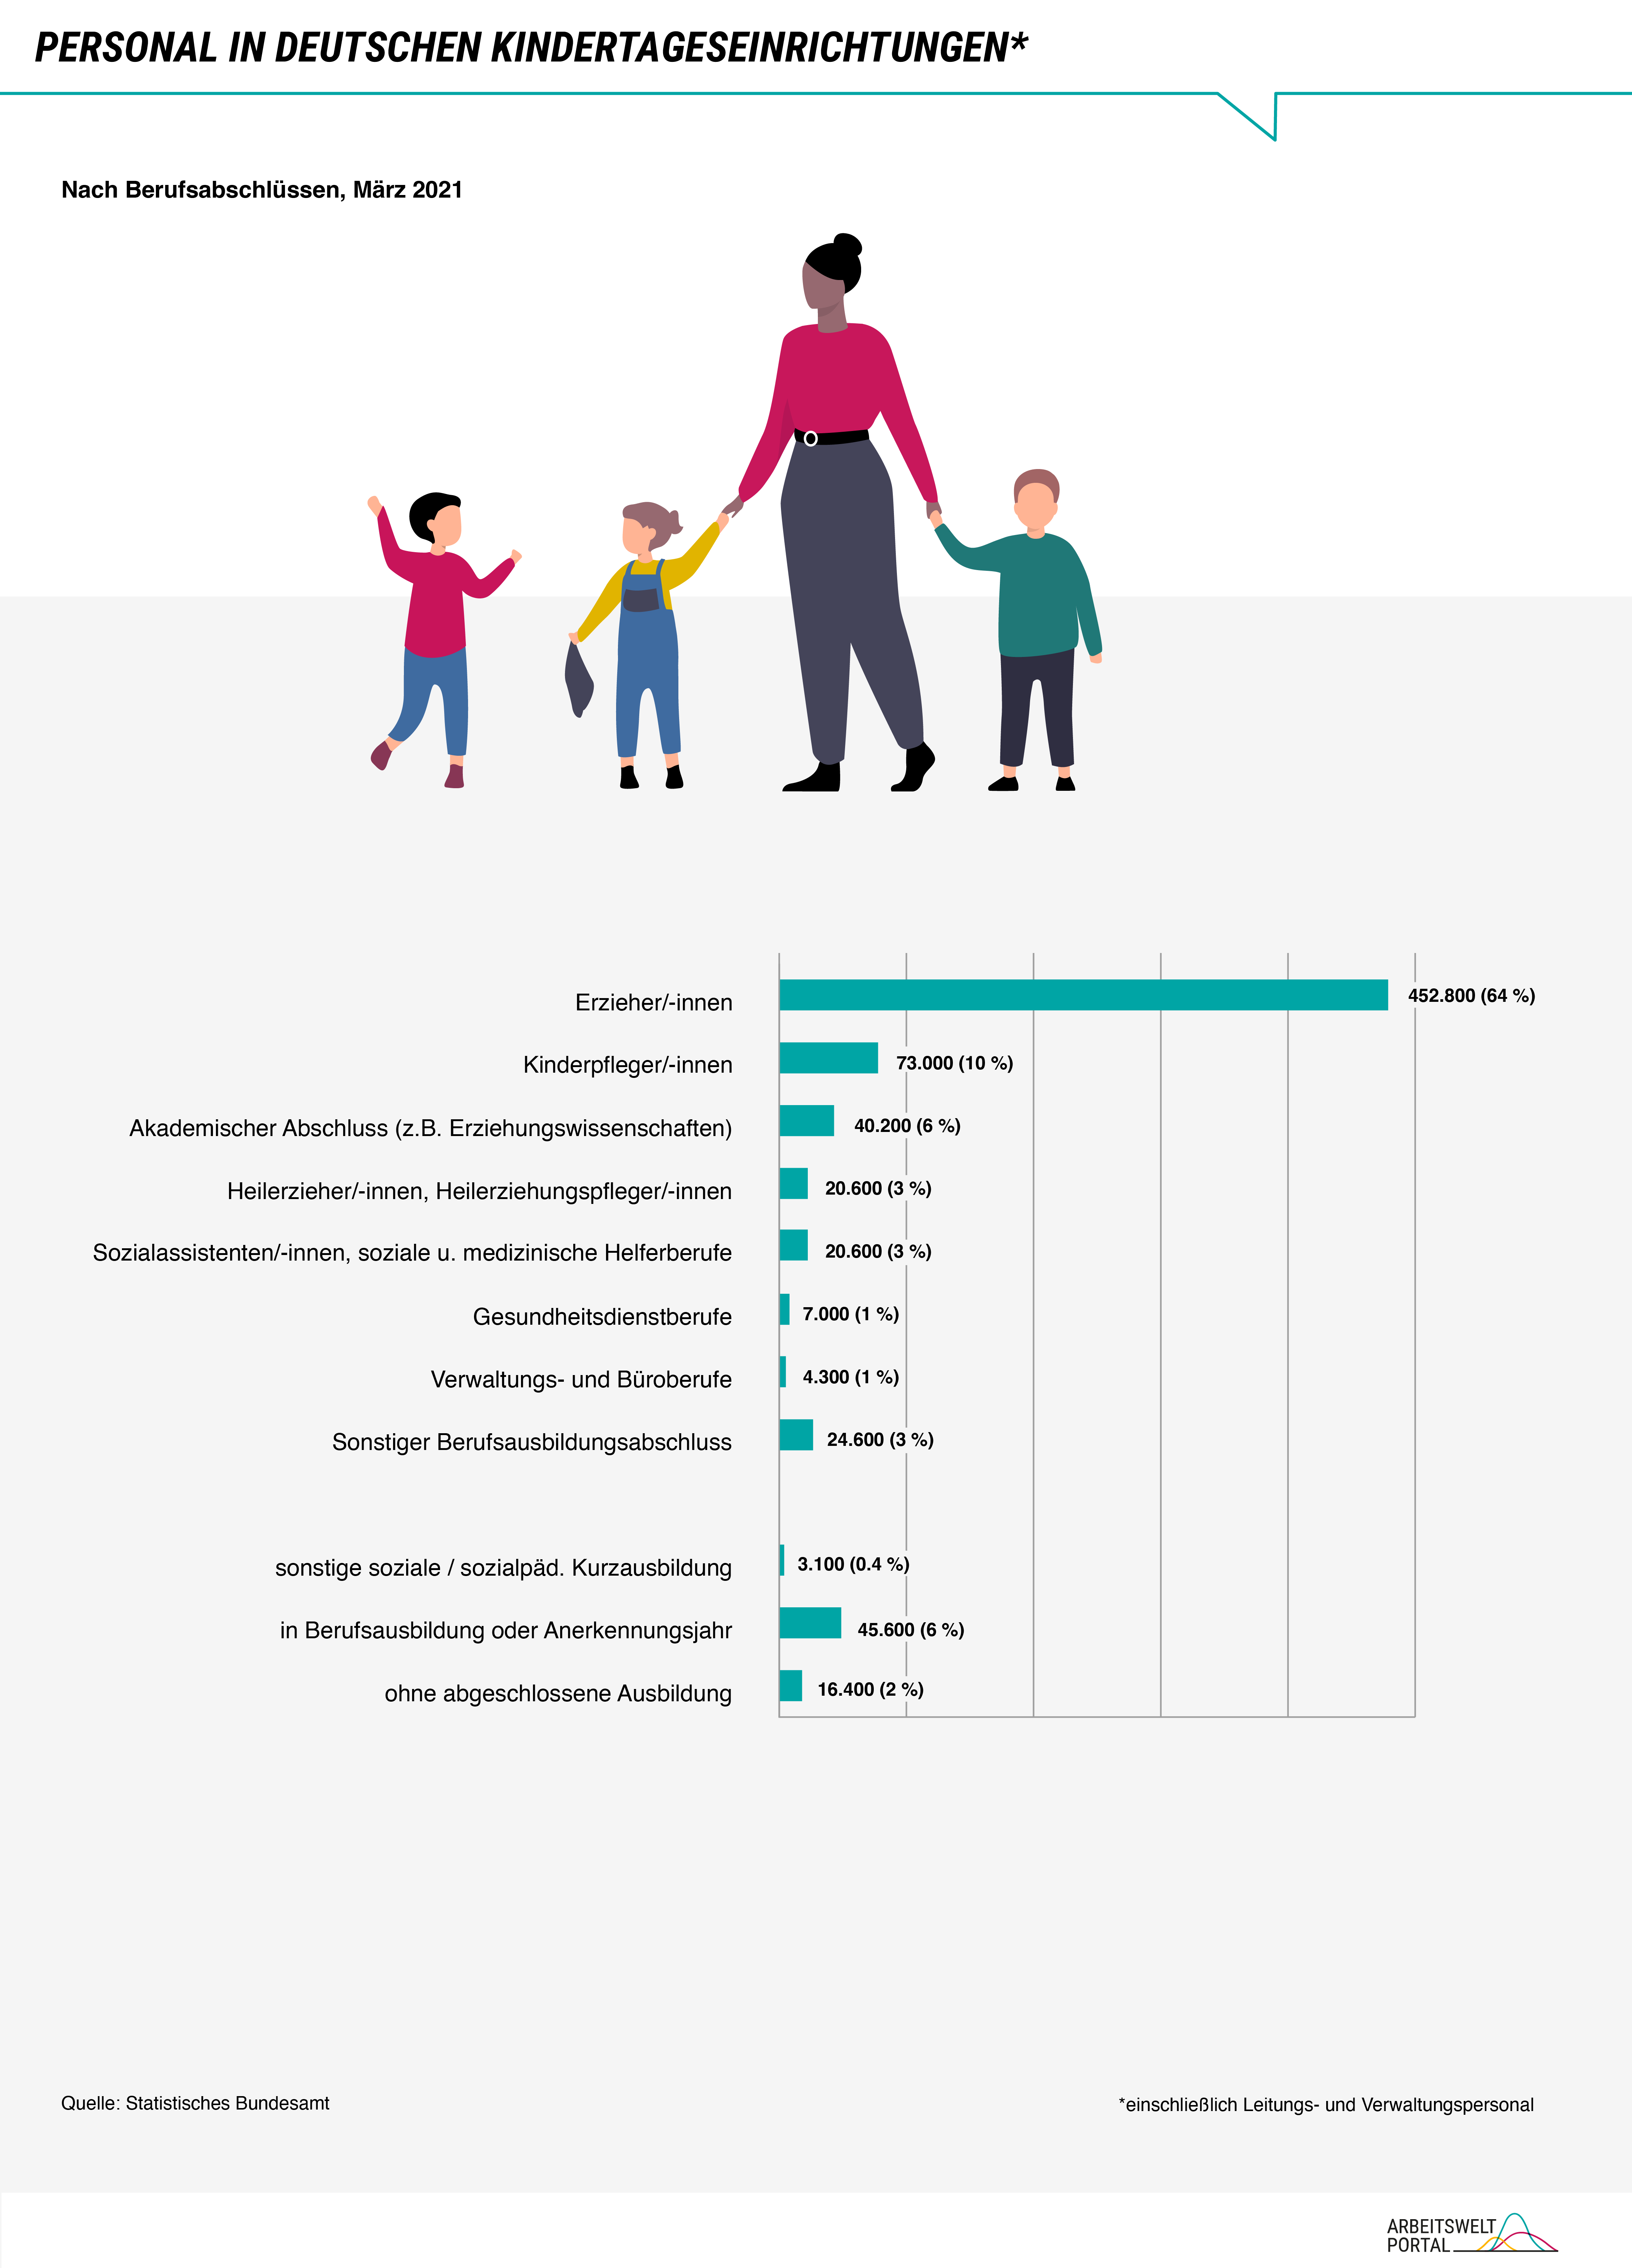   Die Grafik zeigt eine Übersicht über das Personal in deutschen Kindertageseinrichtungen. Die Zusammenstellung des Personals ist nach Berufsabschlüssen aufgelistet. Die Daten stammen vom März 2021. Den größten Anteil des Personals in deutschen Kindertageseinrichtungen machen ausgebildete Erzieher/-innen mit 452.800 Personen aus. Diese bilden 64% des Personals in deutschen Kindertageseinrichtungen. An zweiter Stelle folgen Kinderpfleger/-innen mit 73.000 Beschäftigten, die 10% des Gesamtpersonals bilden. Auf drittem Platz folgen Beschäftigte mit einem akademischen Abschluss beispielsweise der Erziehungswissenschaften. Nachfolgend werden nach absteigender Relevanz weitere Berufsabschlüsse und Berufsfelder aufgeführt: Sozialassistent/-innen bzw. soziale und medizinische Helferberufe, Gesundheitsdienstberufe, Verwaltungs- und Büroberufe. Den kleinsten Anteil am Gesamtpersonal haben Verwaltungs- und Büroberufe mit 1% des Personals. Weitere 3% des Personals in deutschen Kindertageseinrichtungen haben einen Berufsabschluss, der nicht den genannten Bereichen zuzuordnen ist.    Weiter werden die Anteile derer angezeigt, die keinen bzw. noch keinen Berufsabschluss haben. 6% der Beschäftigten ist in noch in der Berufsausbildung oder im Anerkennungsjahr, 0,4% des Personals hat eine soziale oder sozialpädagogische Kurzausbildung und 2% des Personals haben keinen Berufsabschluss. 